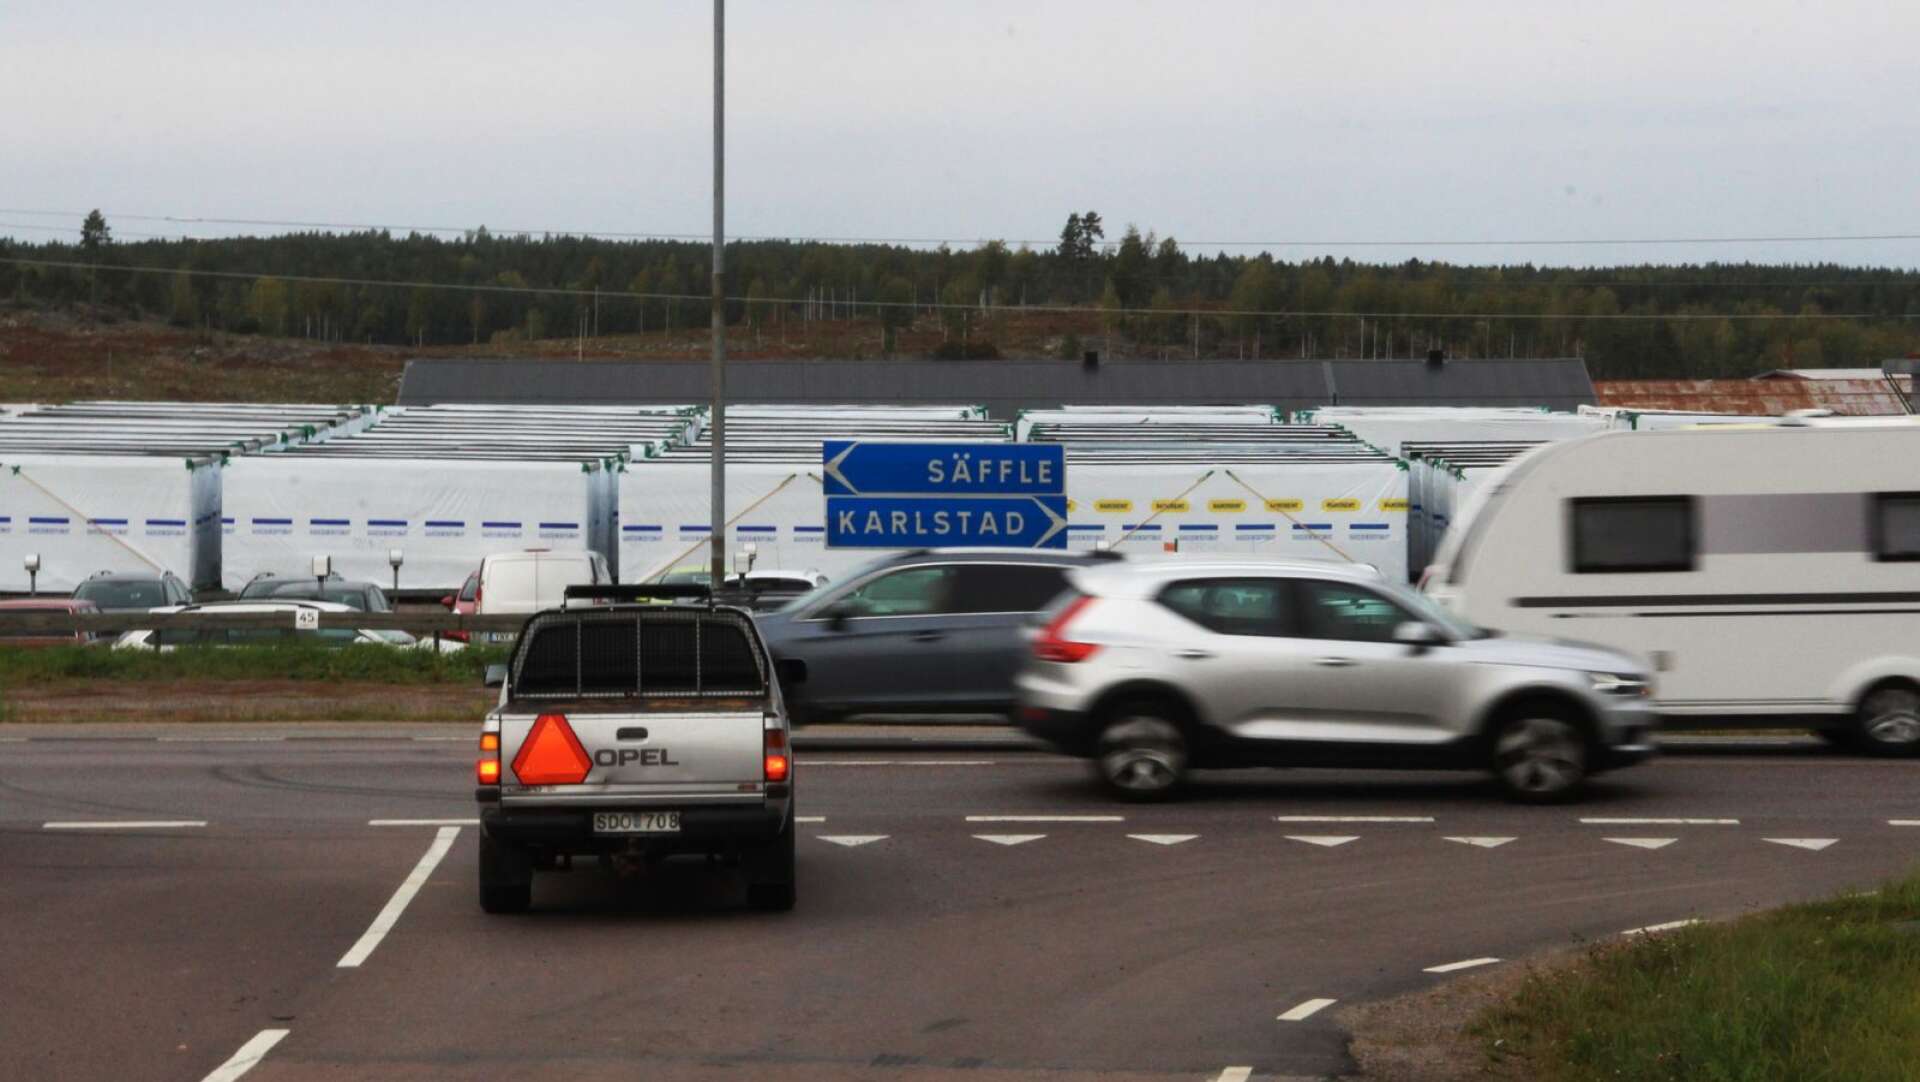 E45 genom Värmlandsbro ska byggas om till en 2+1-väg med mitträcke. Trafikverket menar att vägen som den är i dag brister i trafiksäkerhet, och nu finns sex olika förslag på hur vägen kan komma att se ut i framtiden.